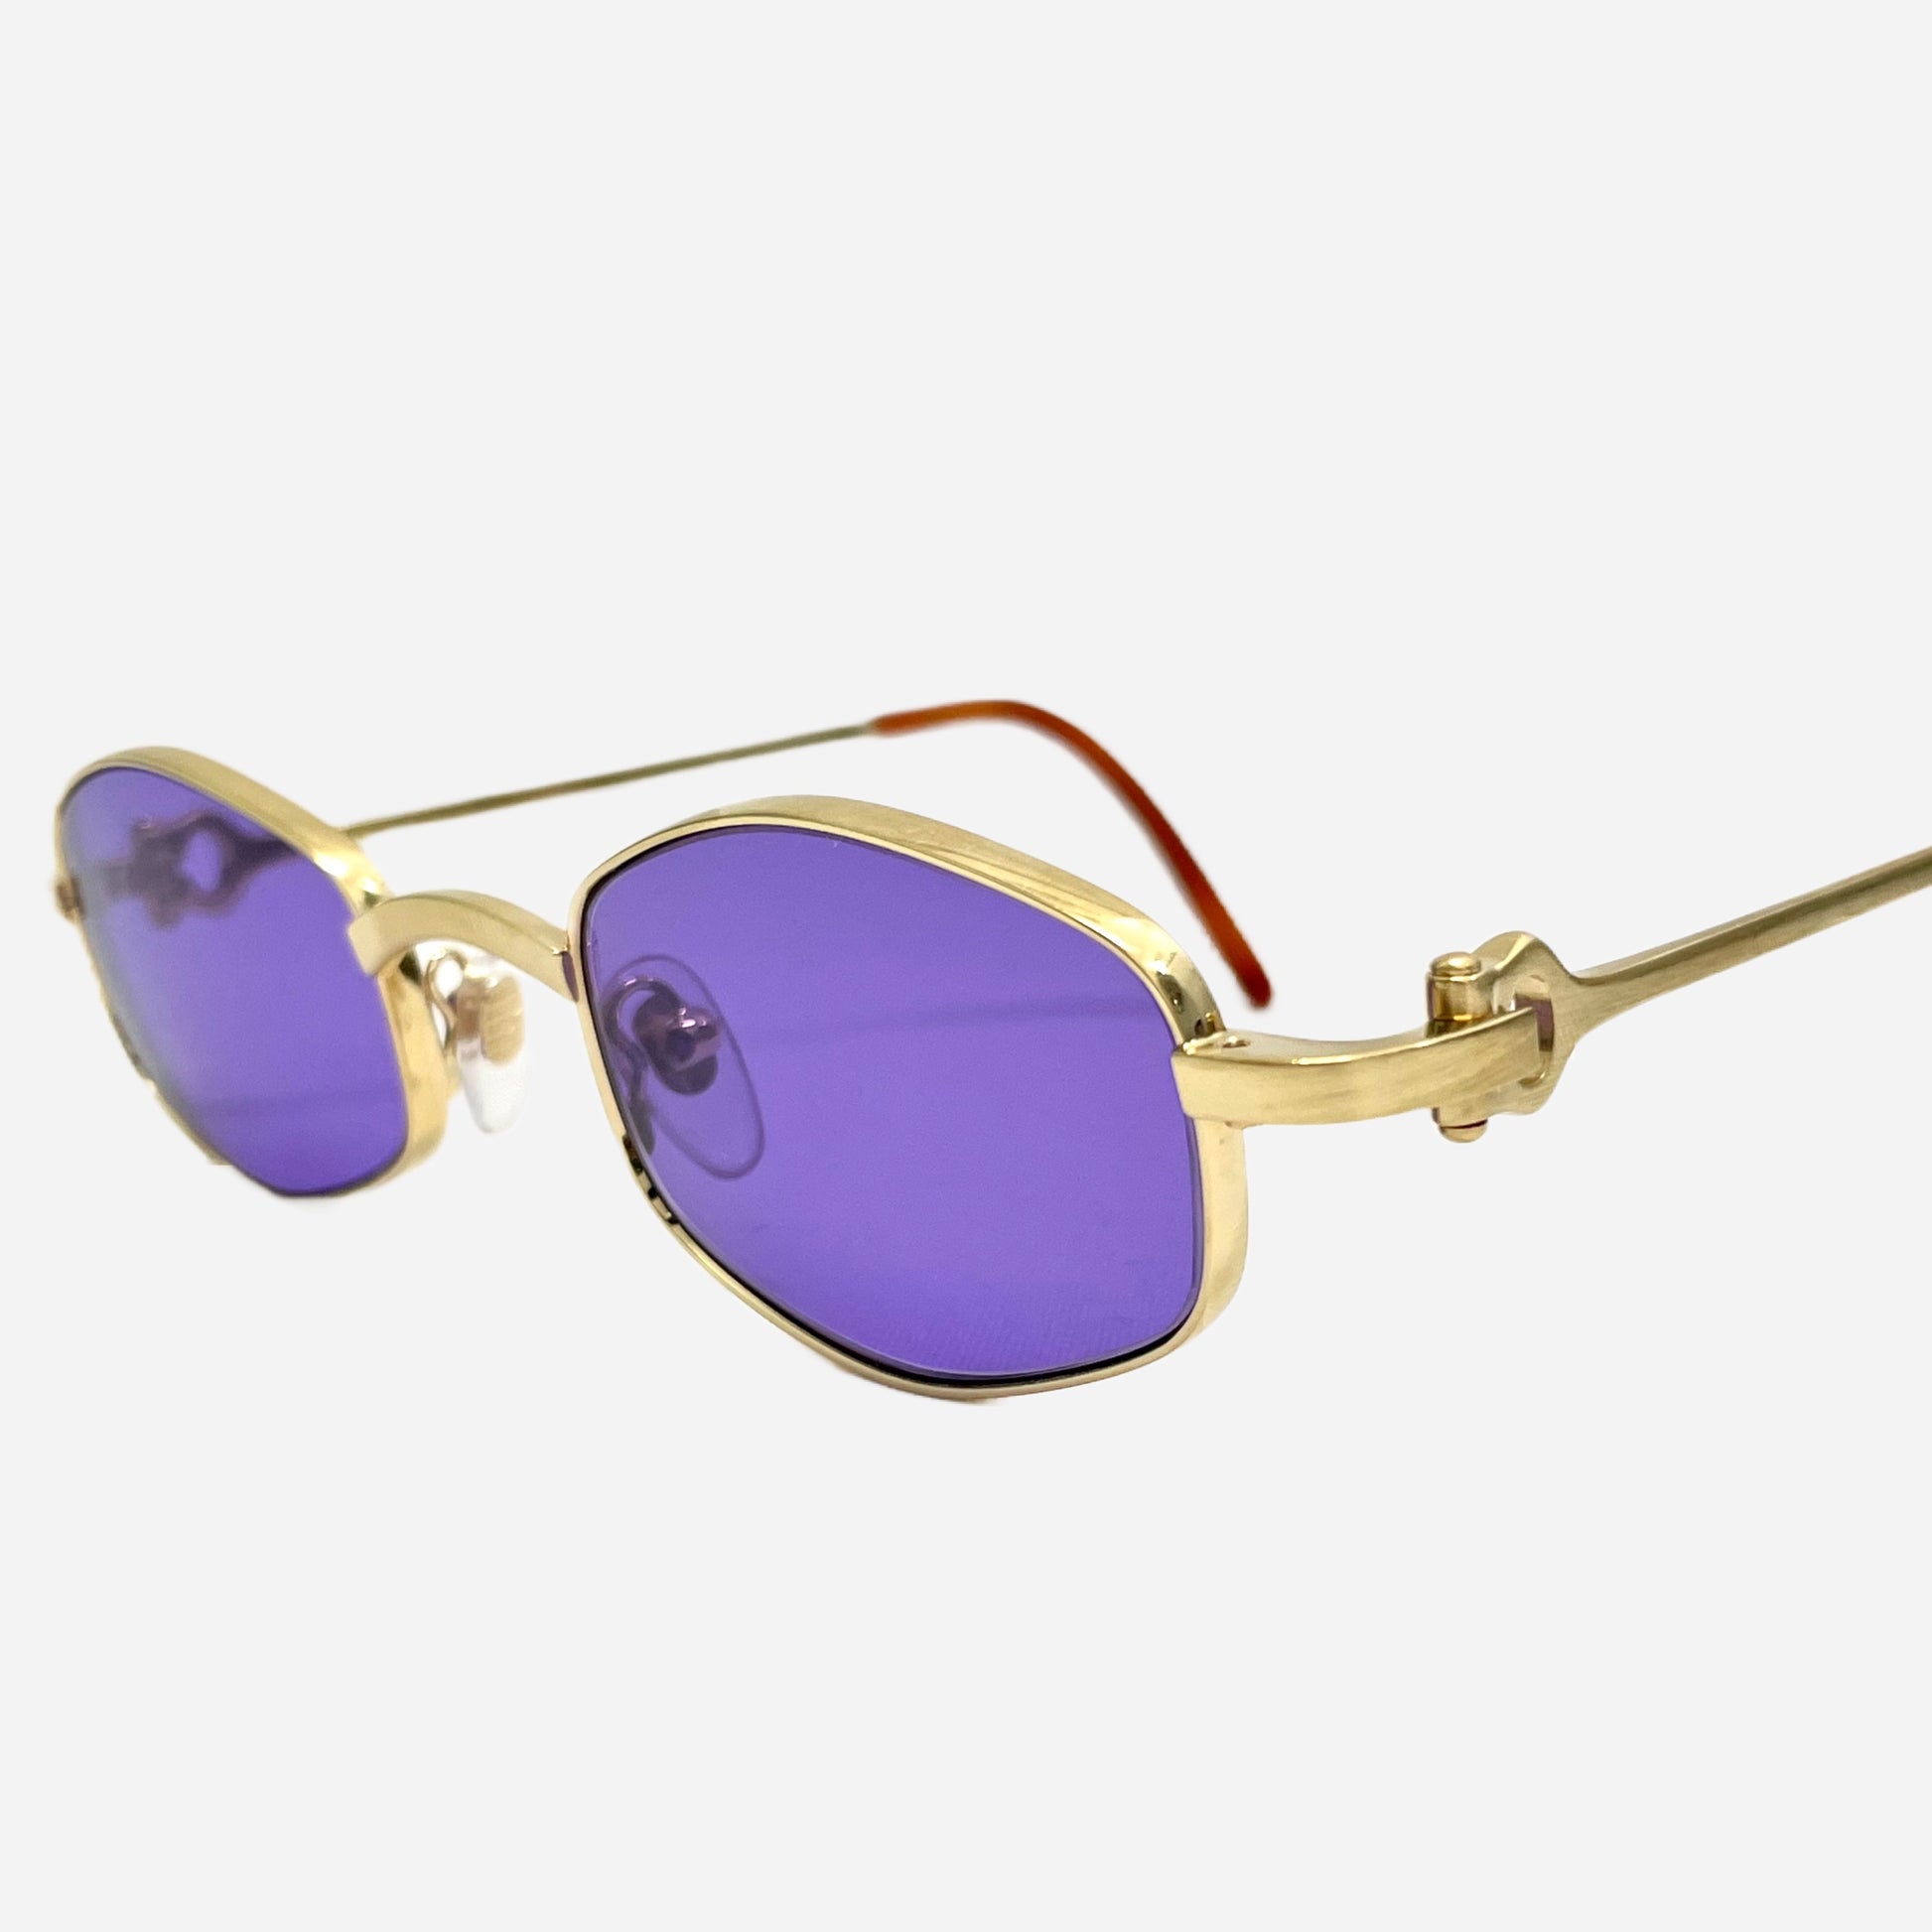 Vintage-Cartier-Octagon-24-Carats-Sonnenbrille-Sunglasses-the-seekers-vintage-designer-sunglasses-detail